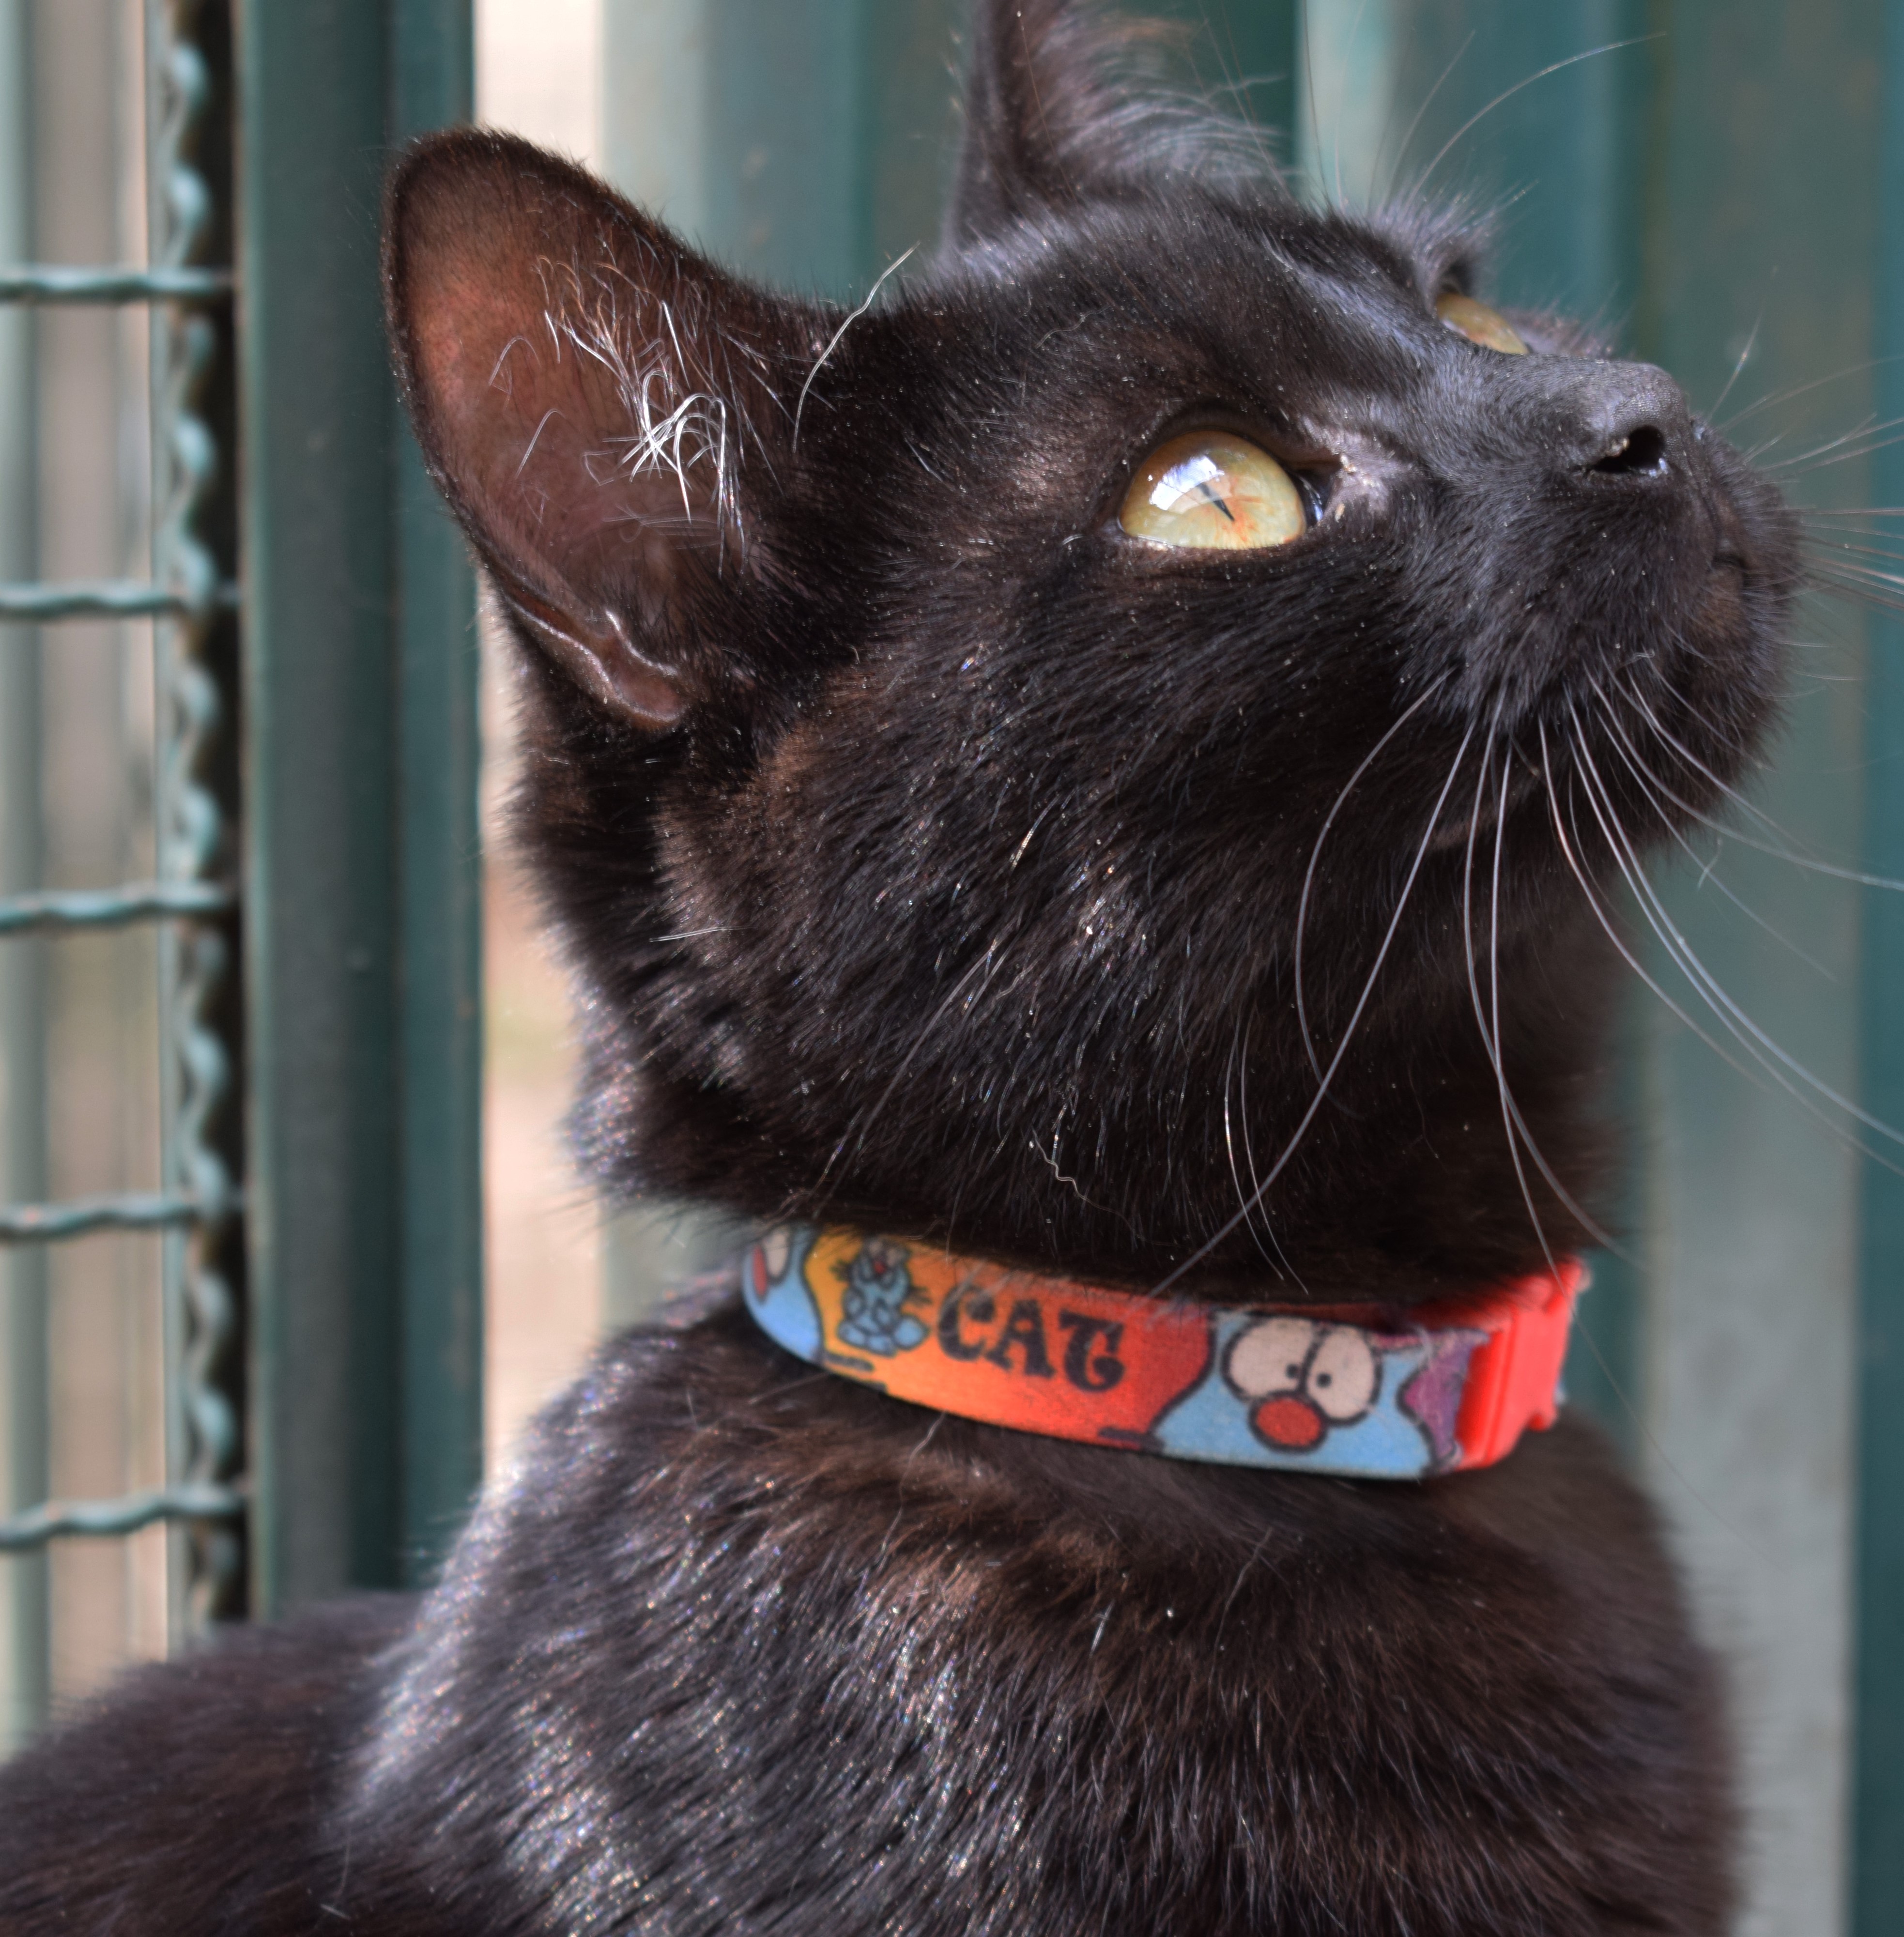 Ônix está sentado, olhando para cima. Ele tem o pelo preto e os olhos claros. O gato também usa uma coleira vermelha.